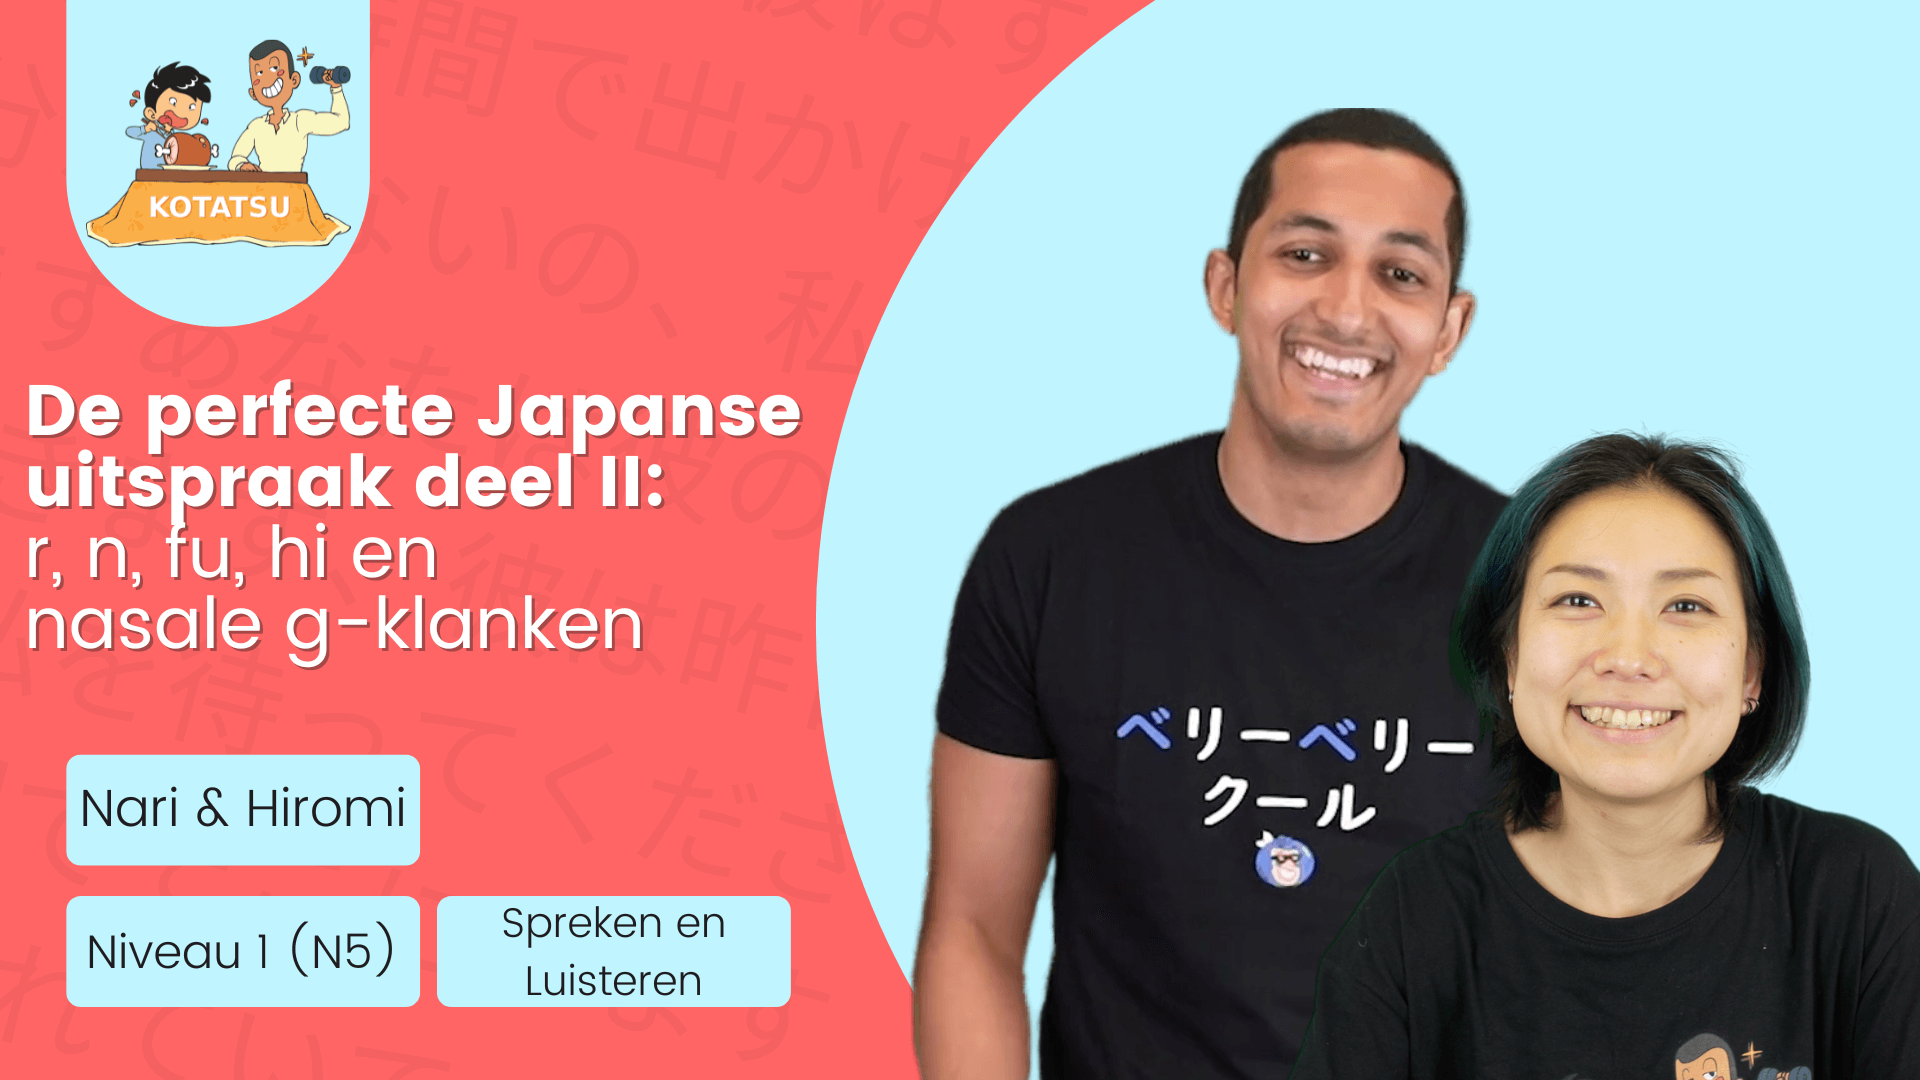 De perfecte Japanse uitspraak II - r, n, fu, hi en nasale g-klanken